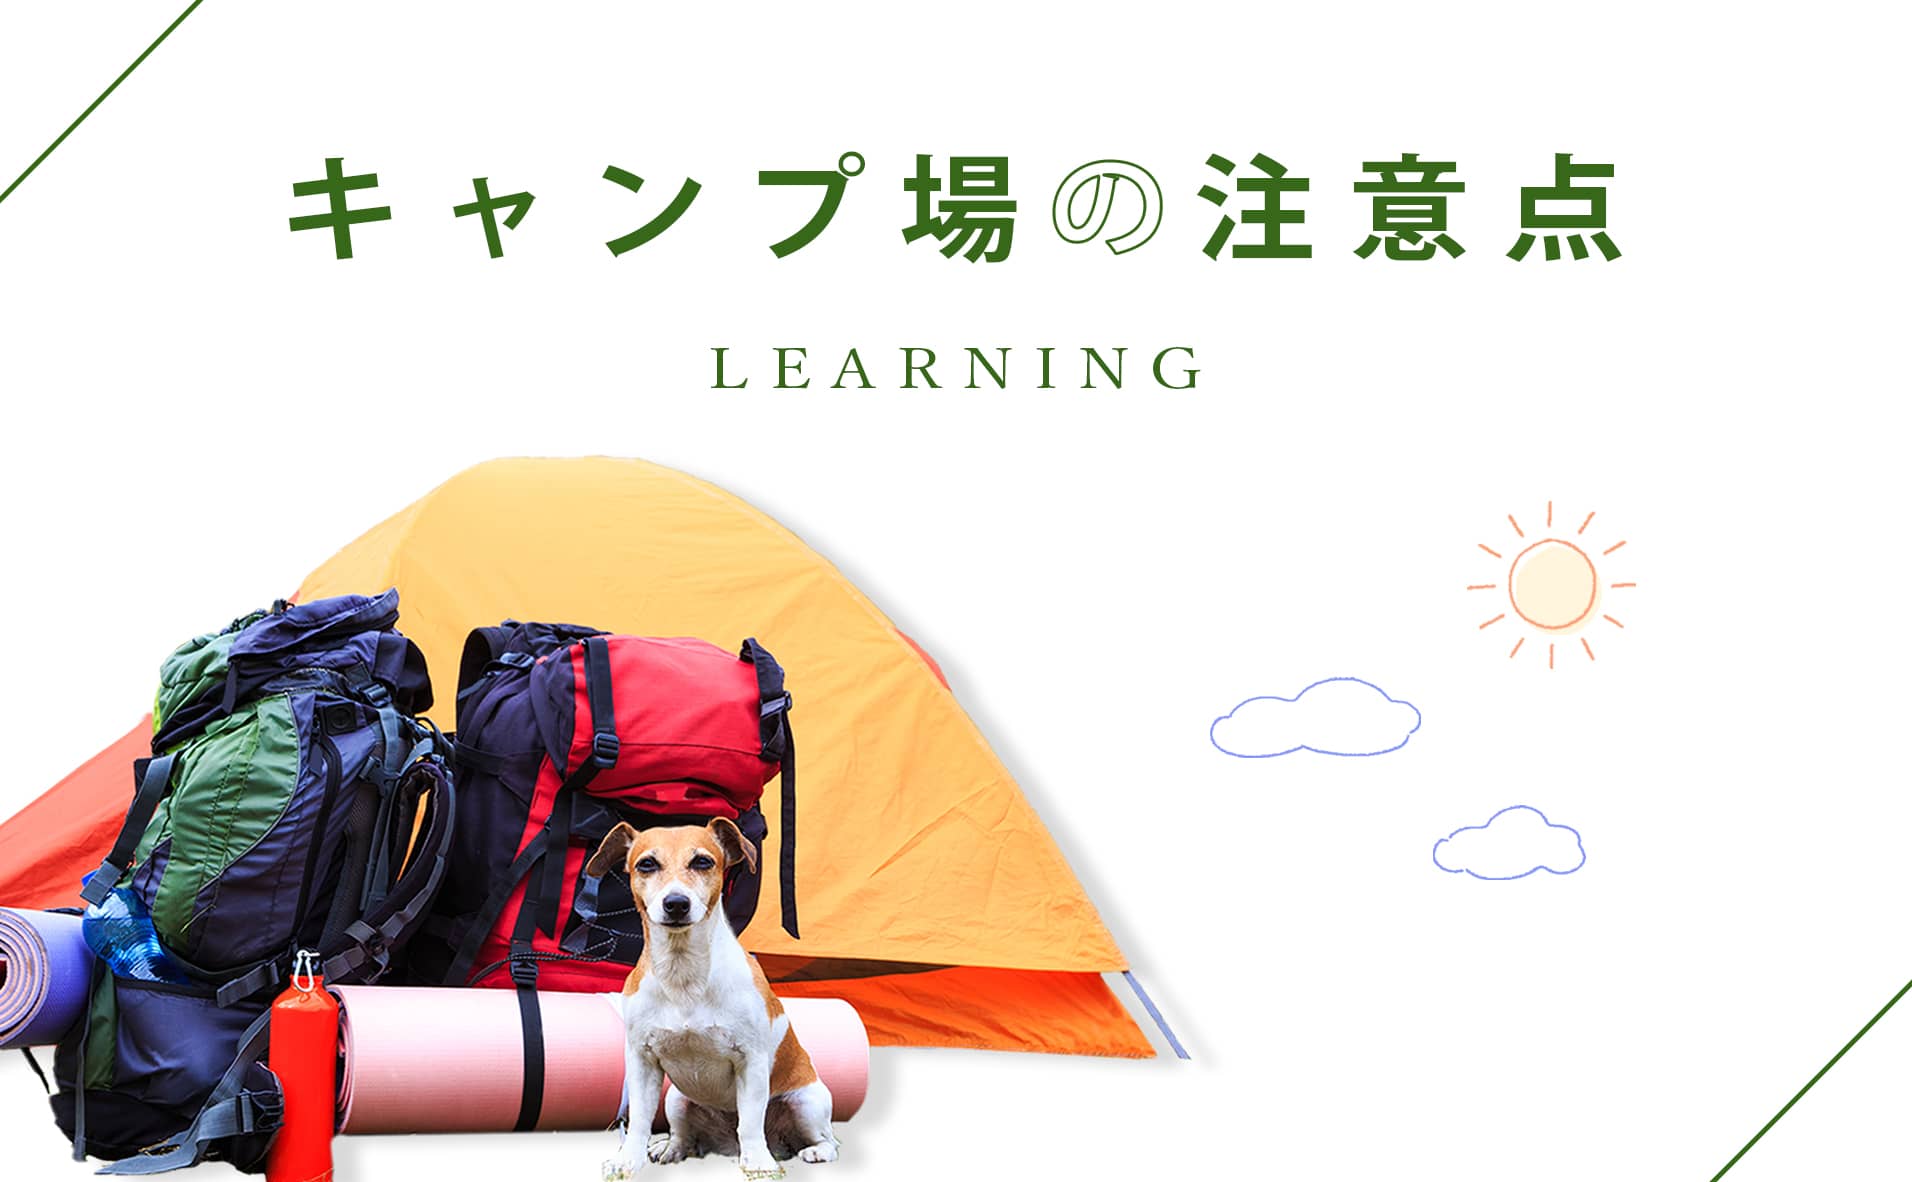 愛犬との初めてのキャンプを楽しもう！ 注意点や持ち物、楽しみ方などを紹介